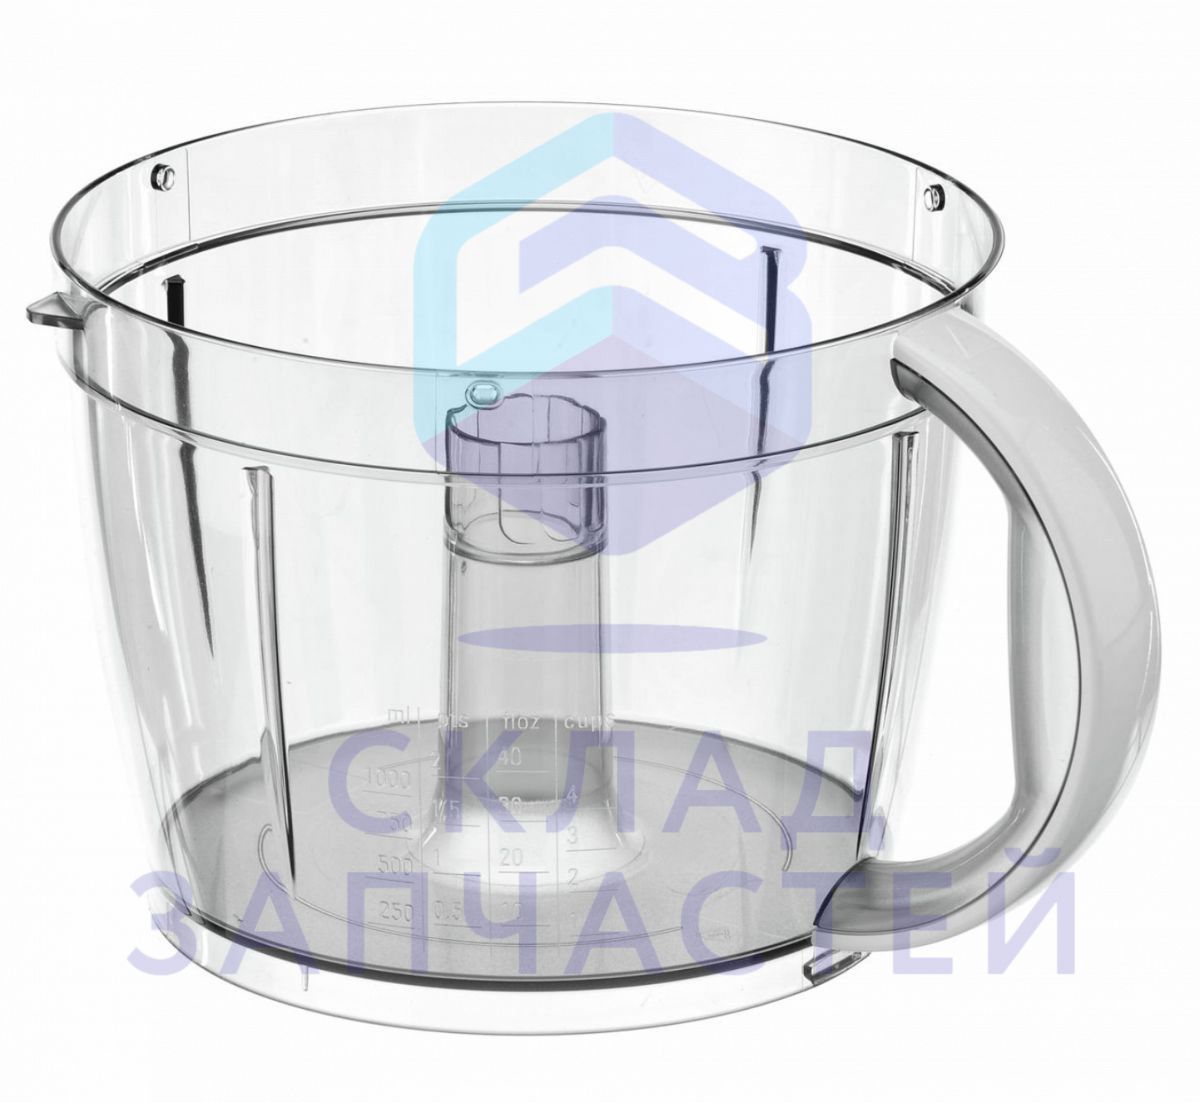 00662161 Bosch оригинал, смесительная чаша, прозрачная с белой ручкой, без крышки